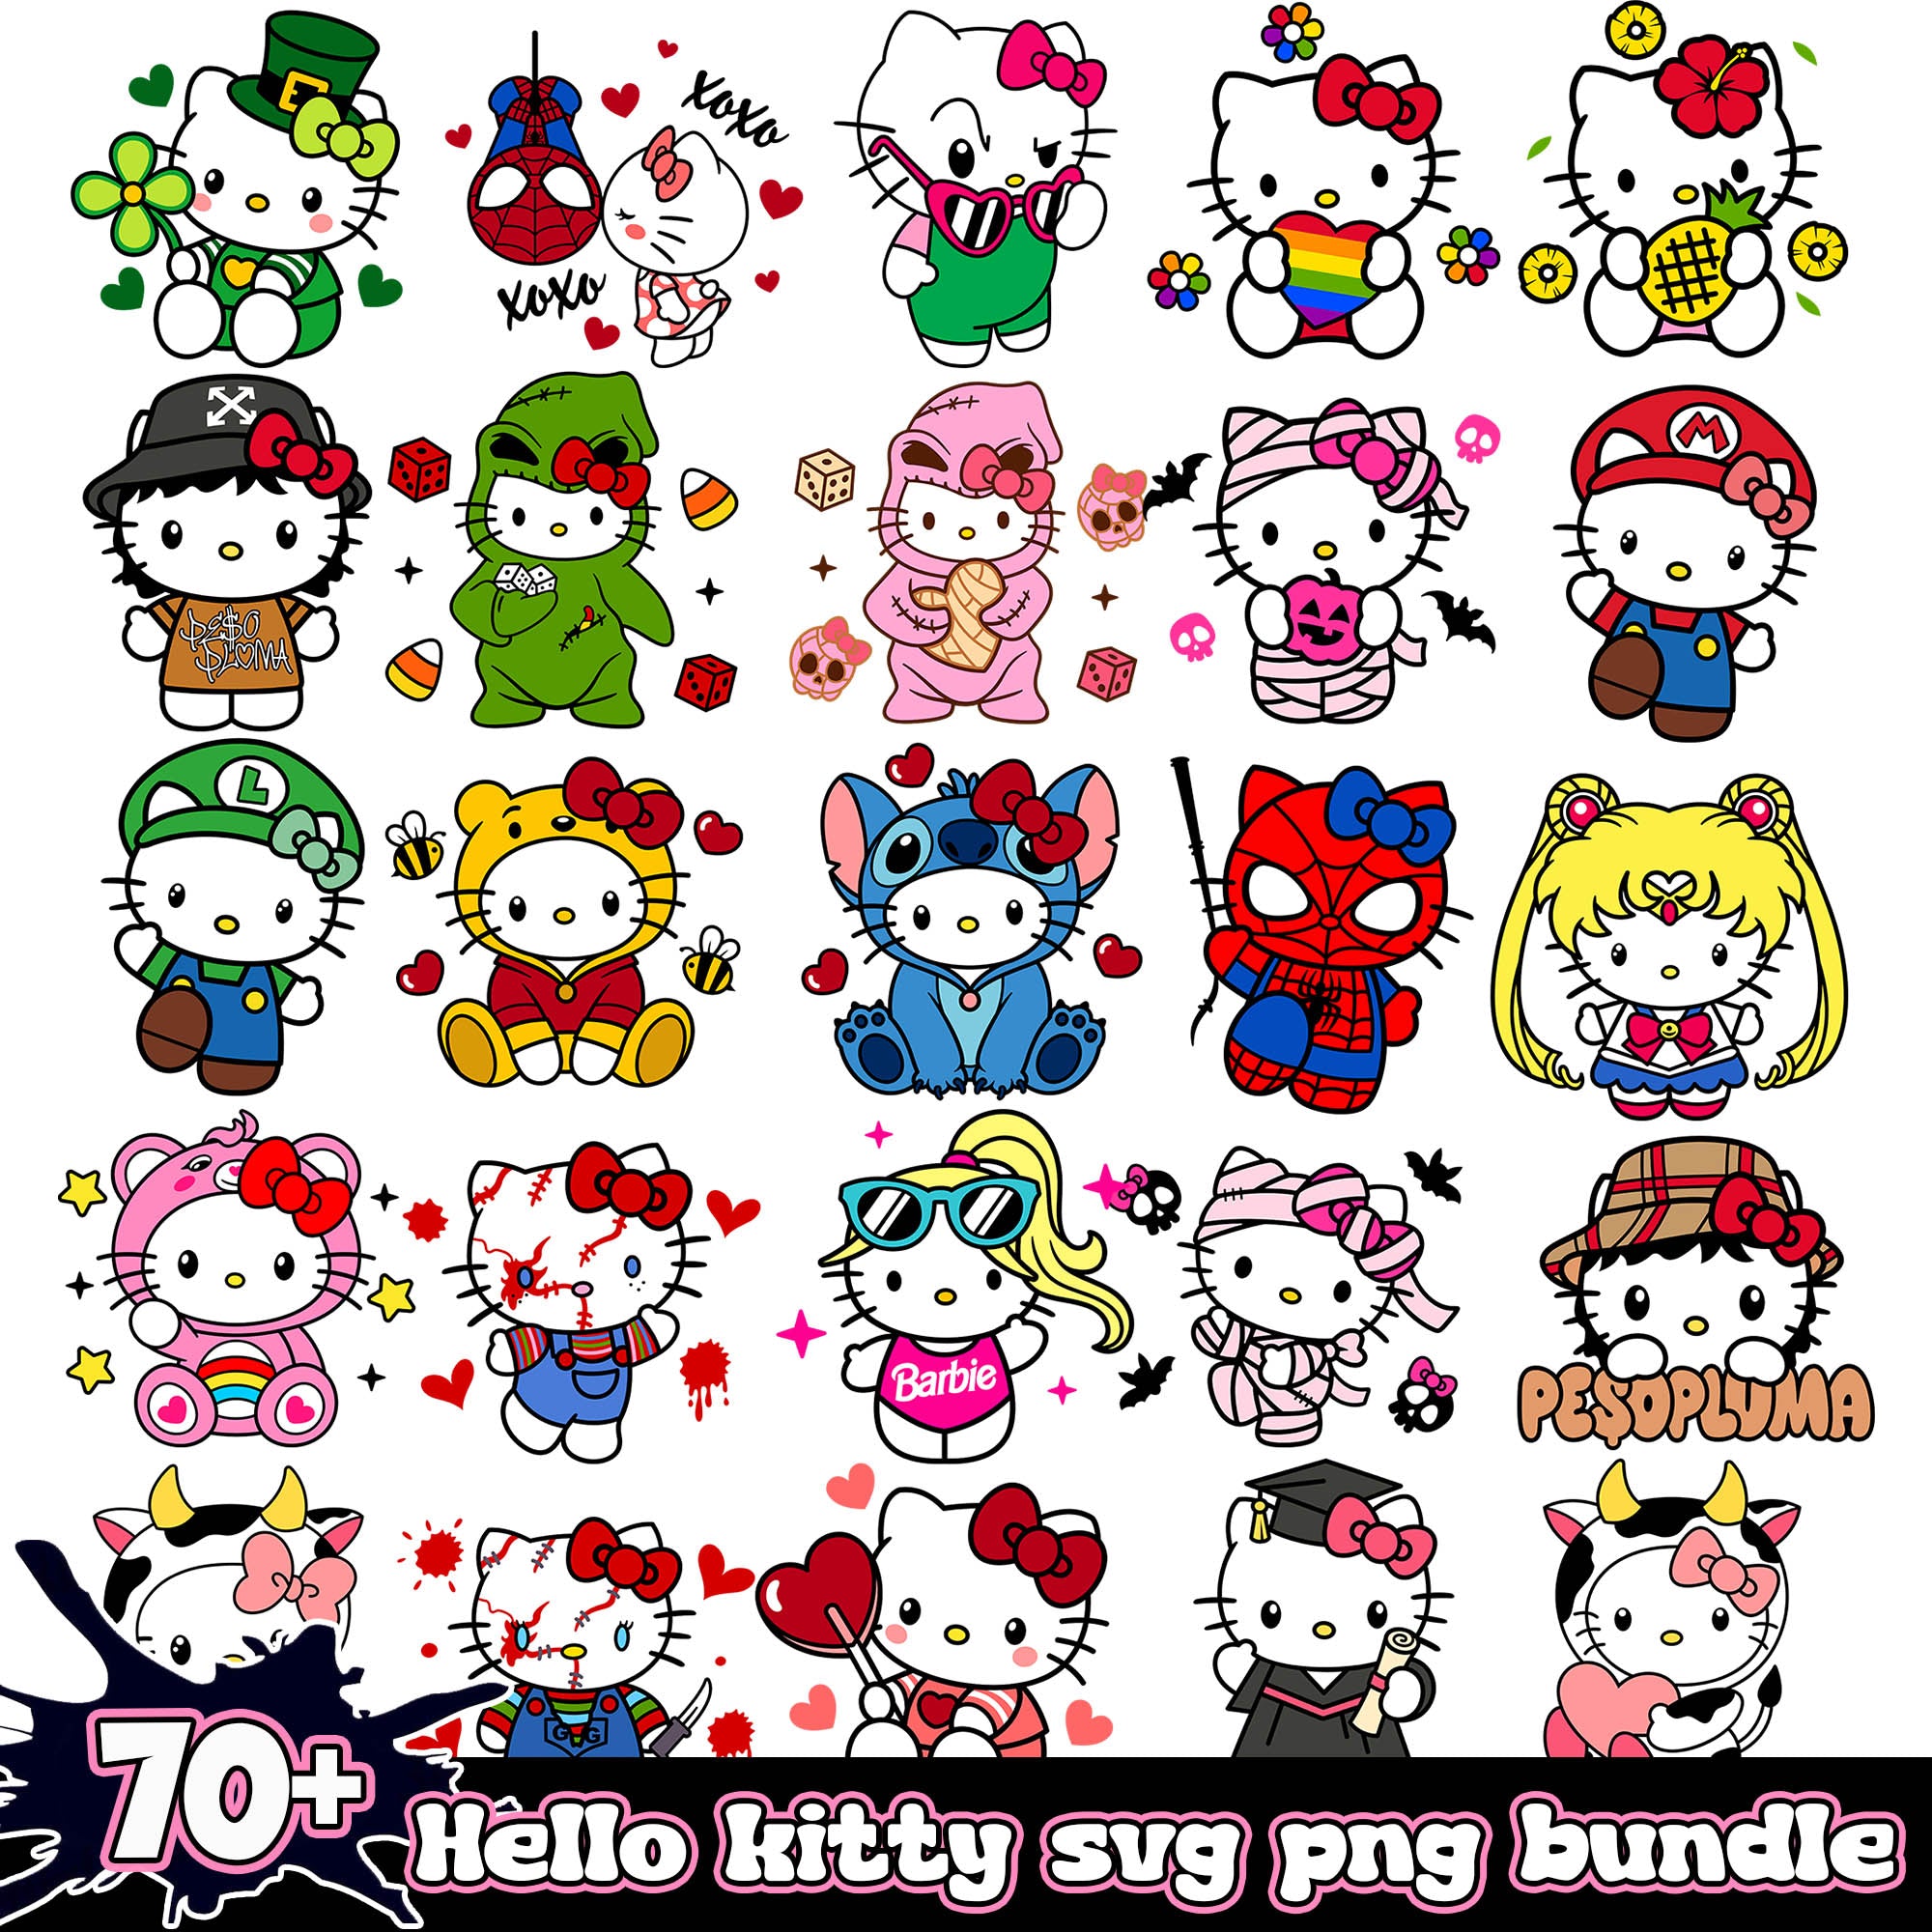 Hello kitty cartoon svg bundle, 70+ file hello kitty svg